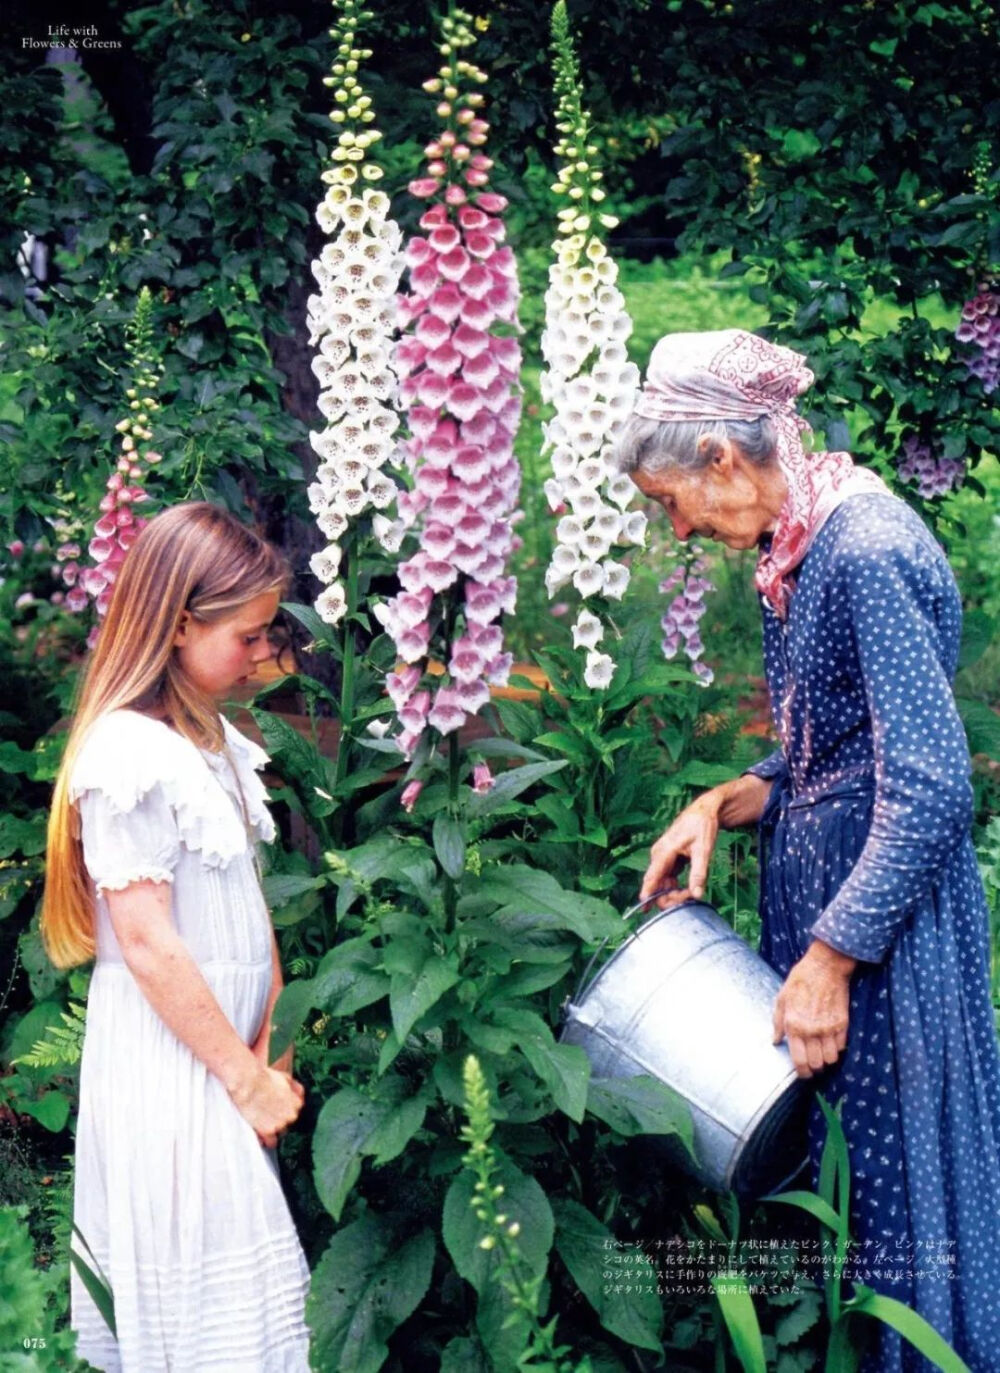 塔莎奶奶与她的花园
“每一个朵盛开的玫瑰，都带来永恒的春天的问候。”
泰戈尔_